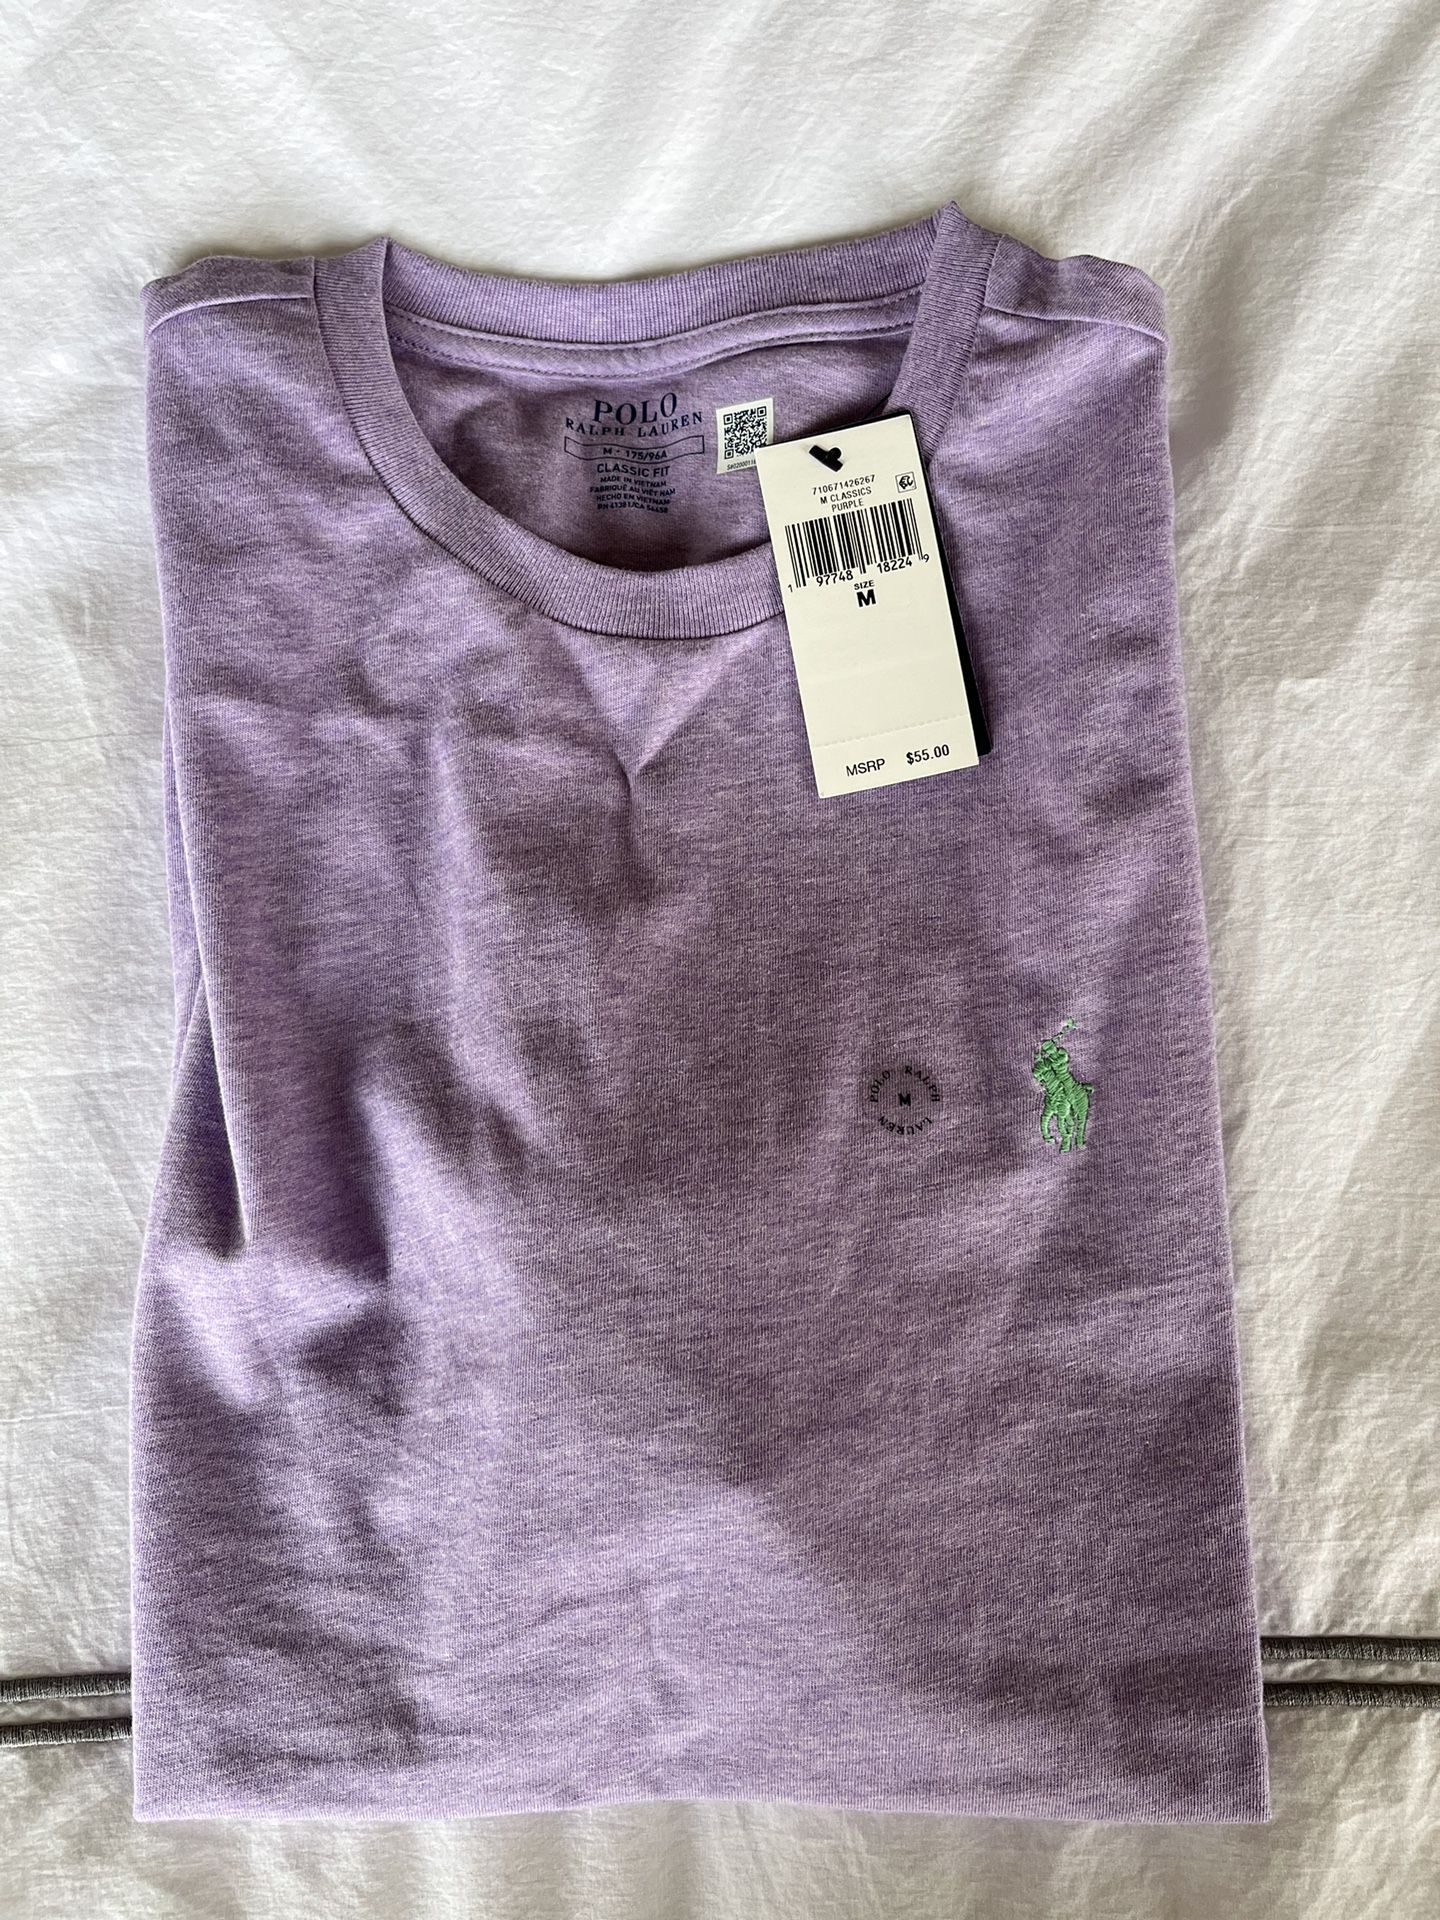 Polo Ralph Lauren men’s light purple T-shirt. Brand new size medium retail $55.